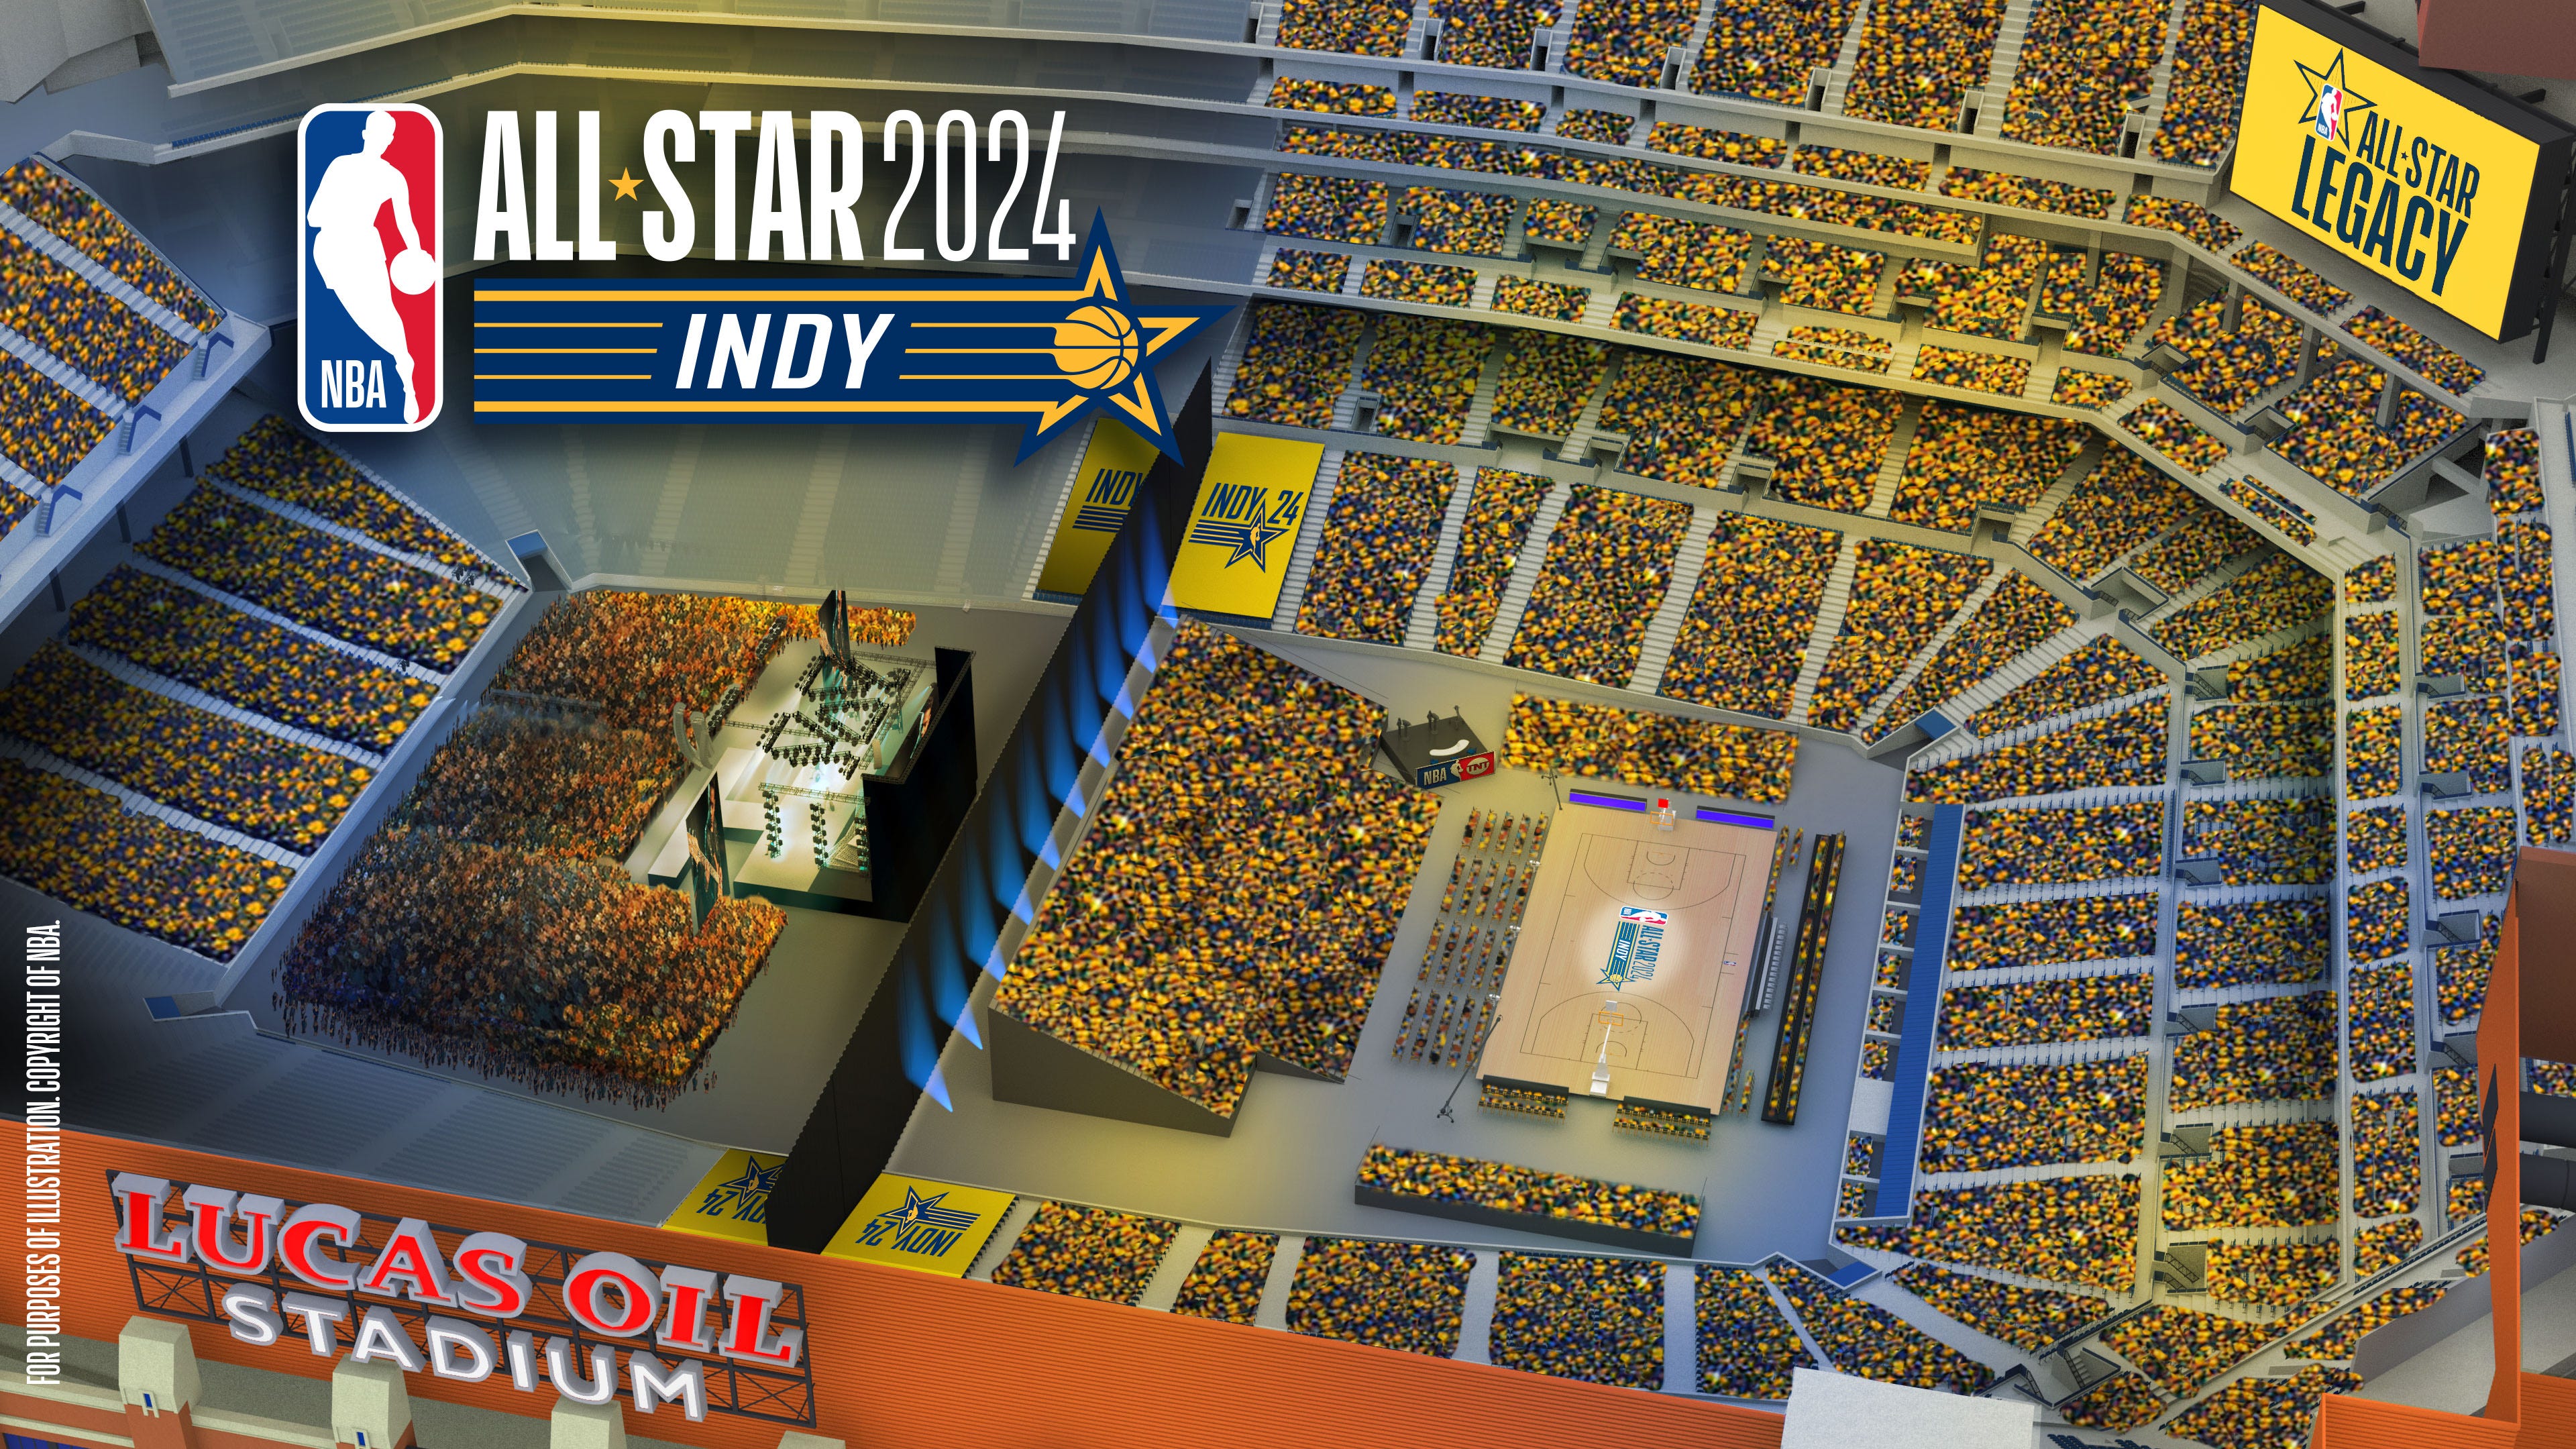 Indy's NBA AllStar Saturday night will be held at Lucas Oil Stadium